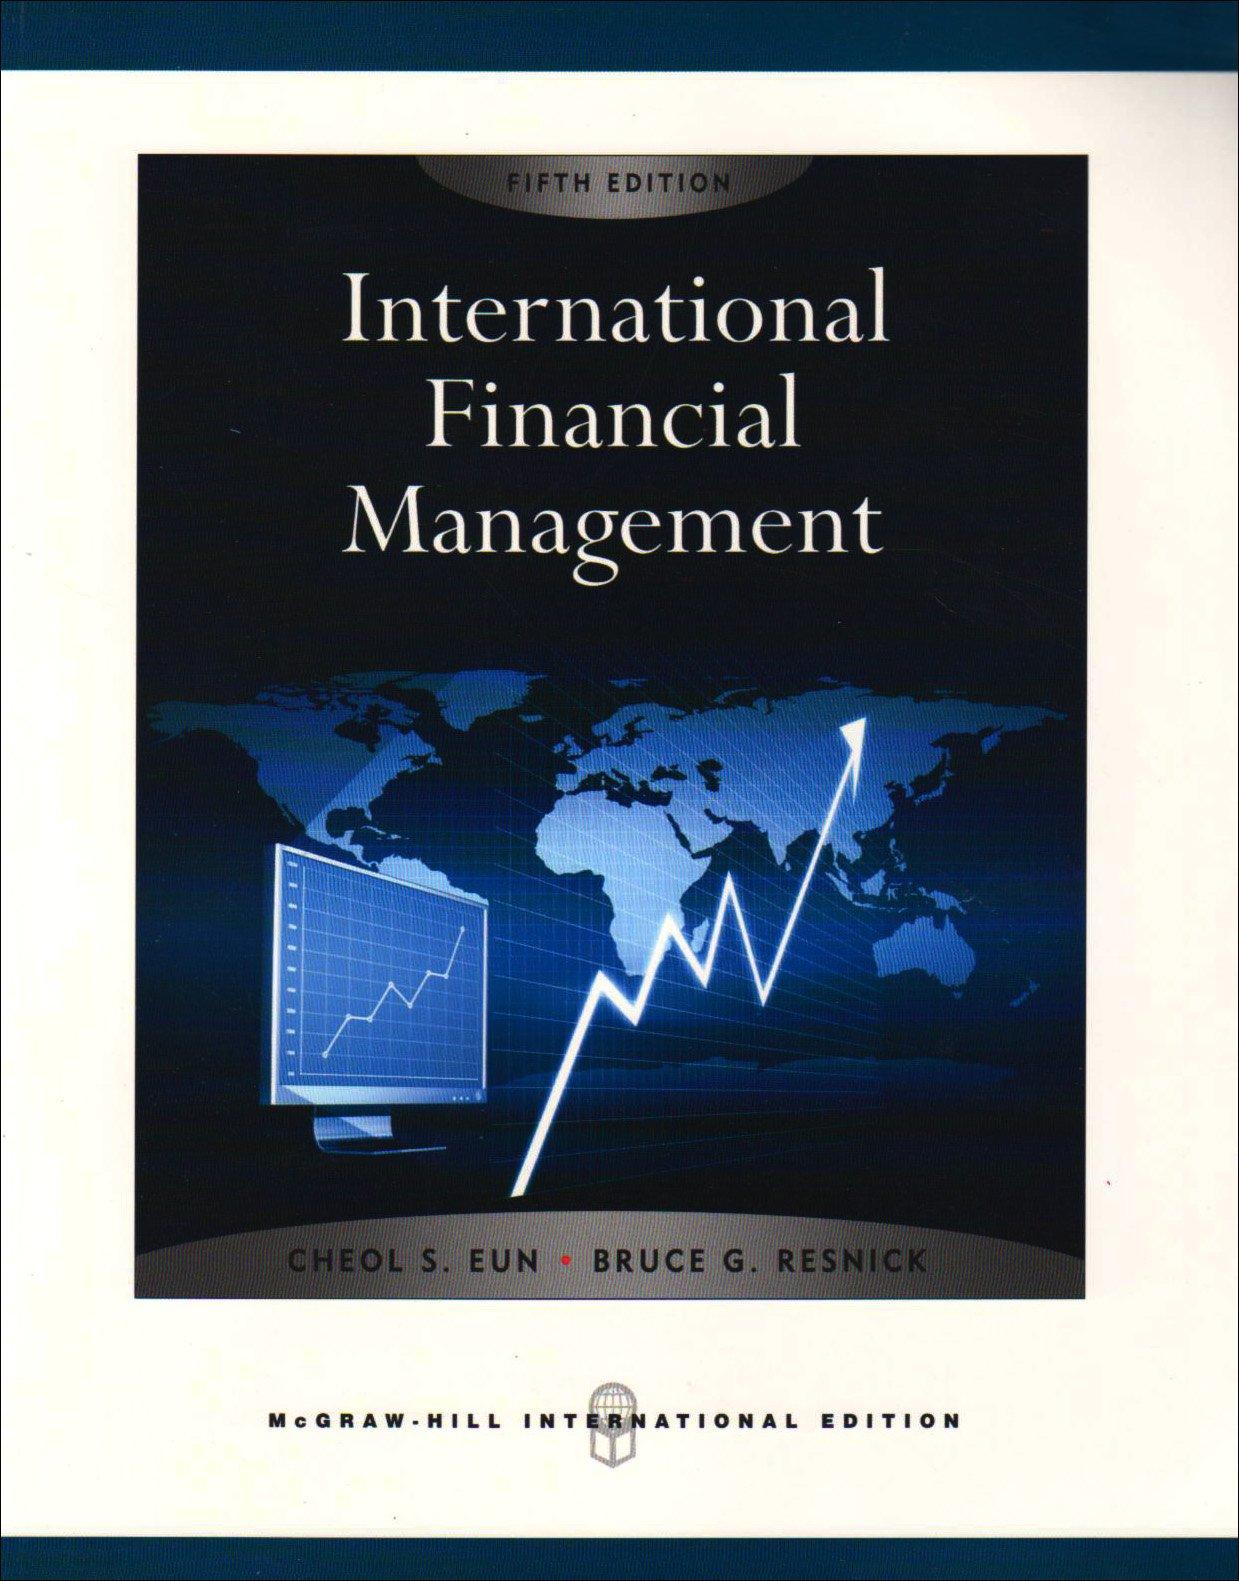 international financial management 5th international edition cheol s. eun, bruce g. resnick 007127619x,